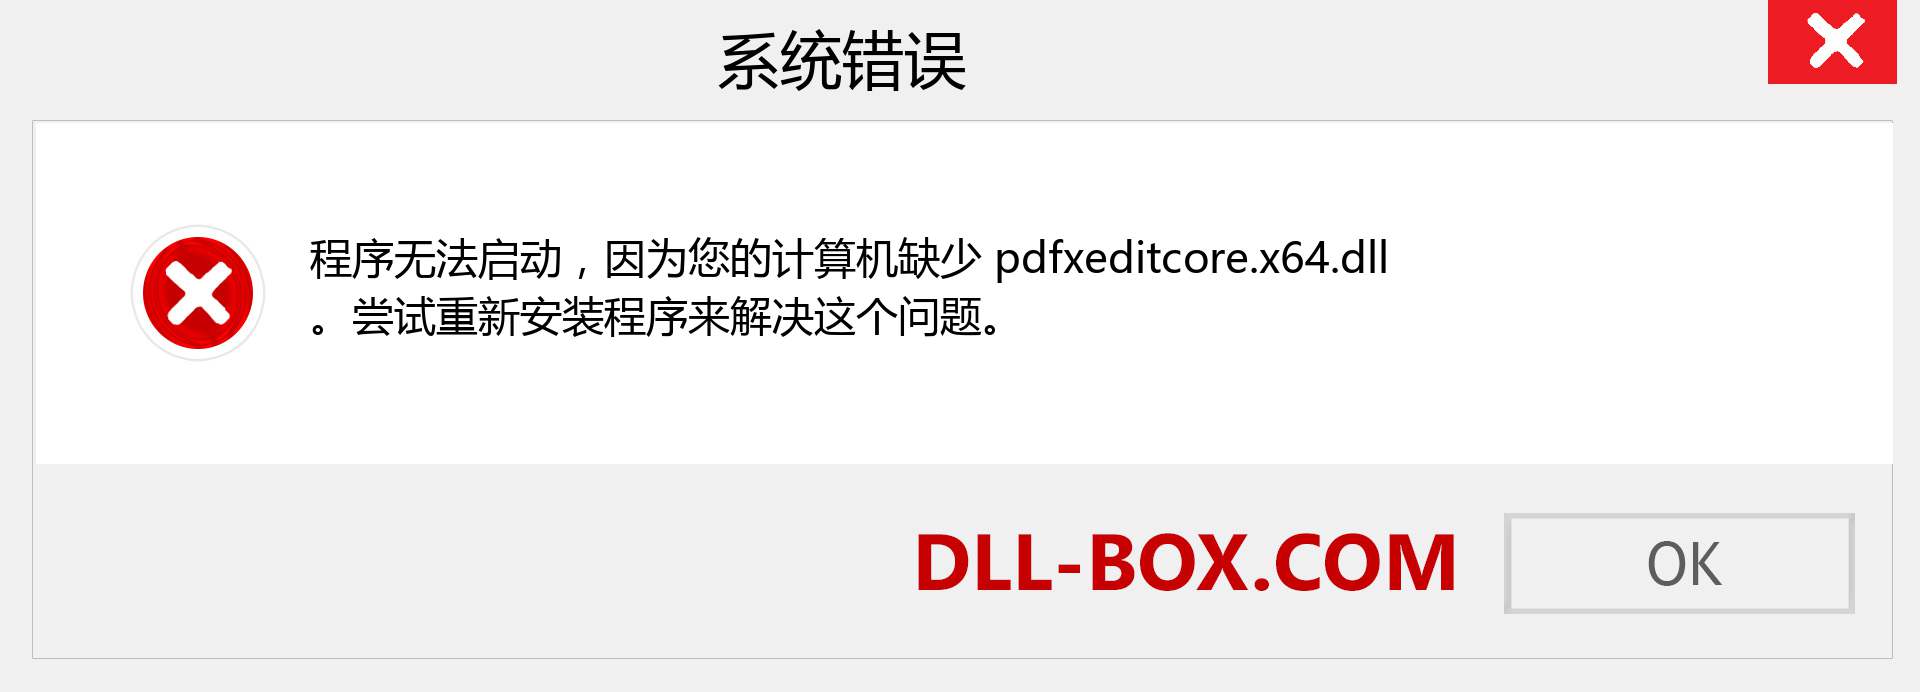 pdfxeditcore.x64.dll 文件丢失？。 适用于 Windows 7、8、10 的下载 - 修复 Windows、照片、图像上的 pdfxeditcore.x64 dll 丢失错误